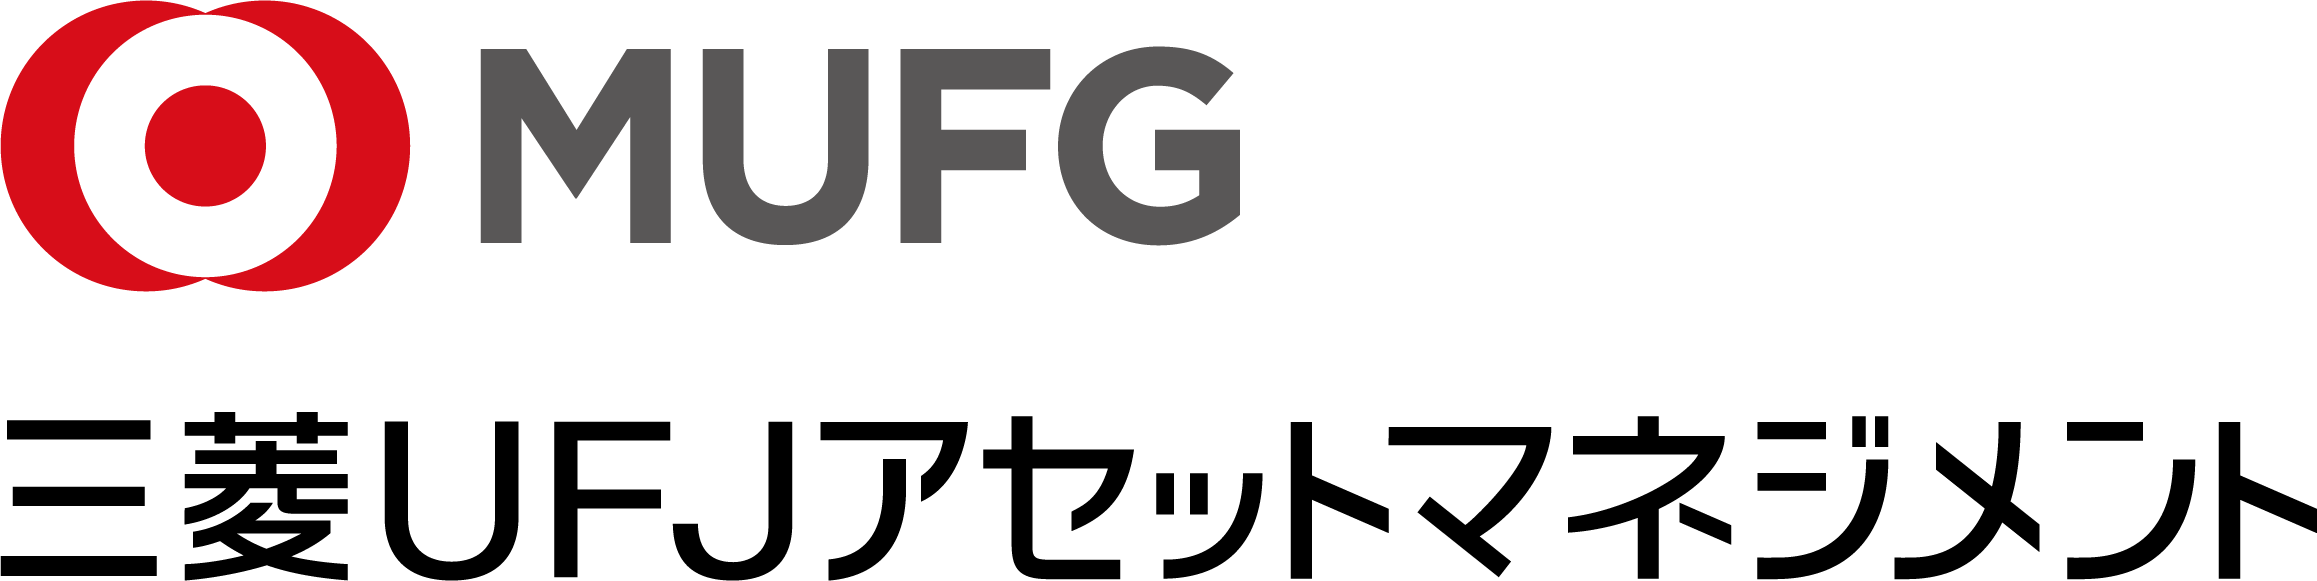 三菱UFJ国際投信